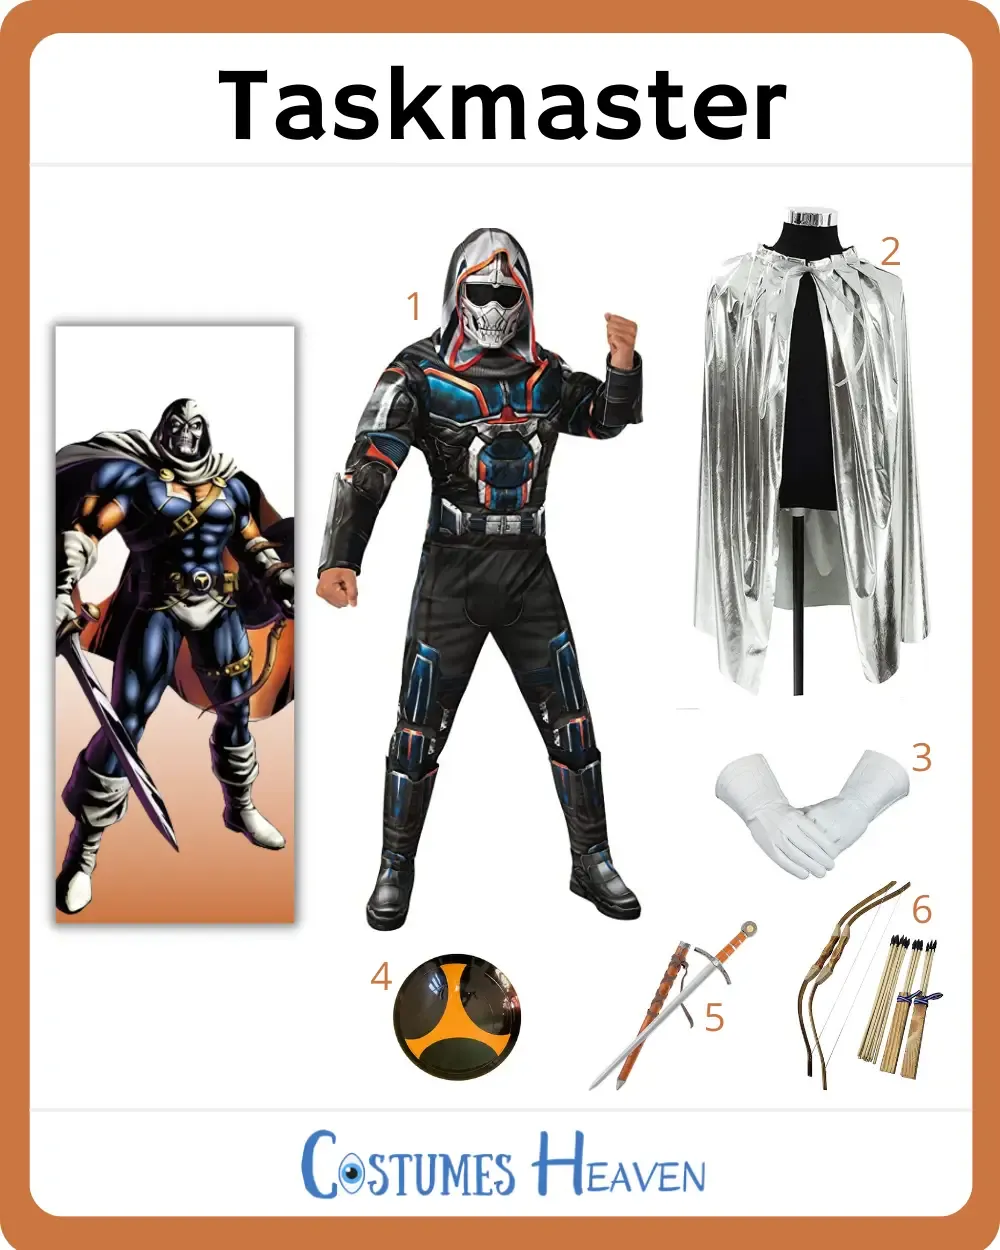 Taskmaster Costume